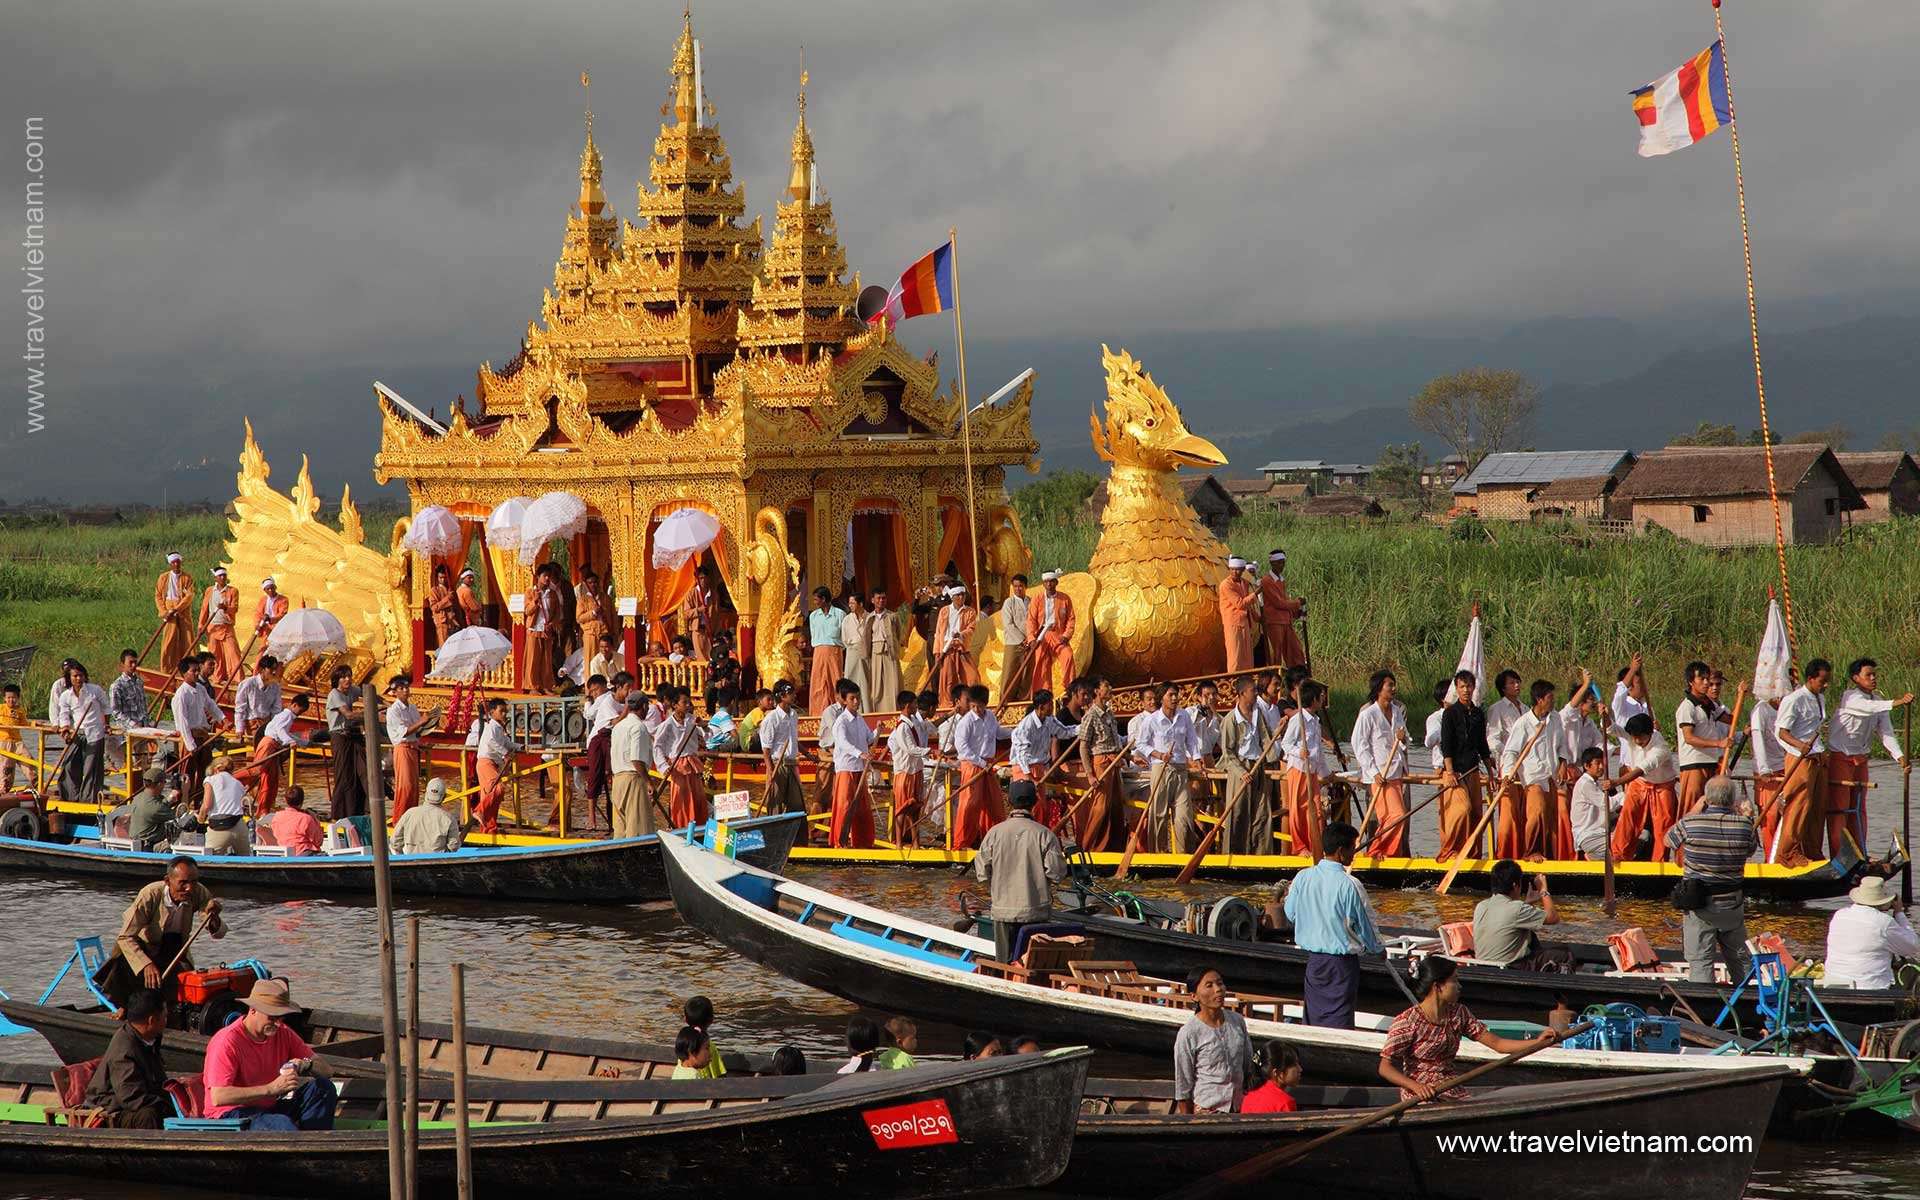 From Angkor Wat to Bagan - 12 Days